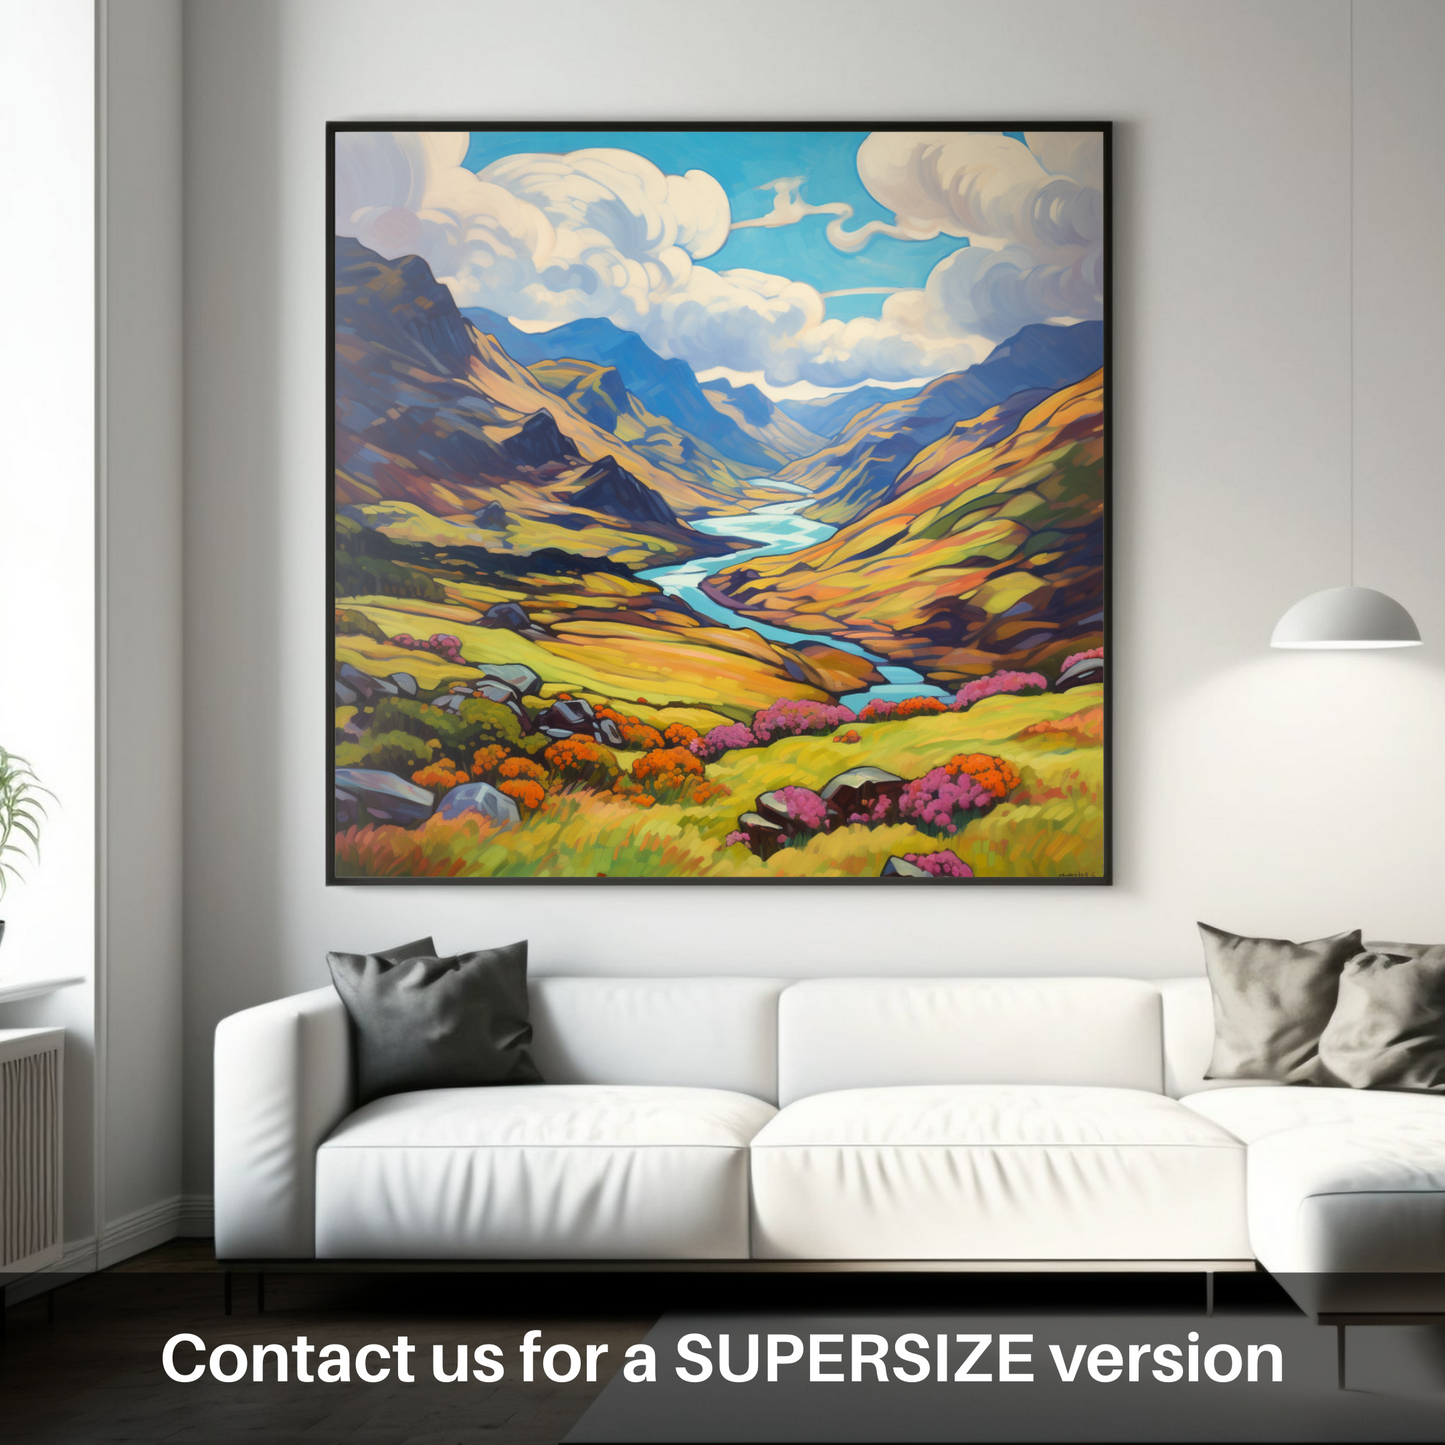 Huge supersize print of Glen Shiel, Highlands in summer